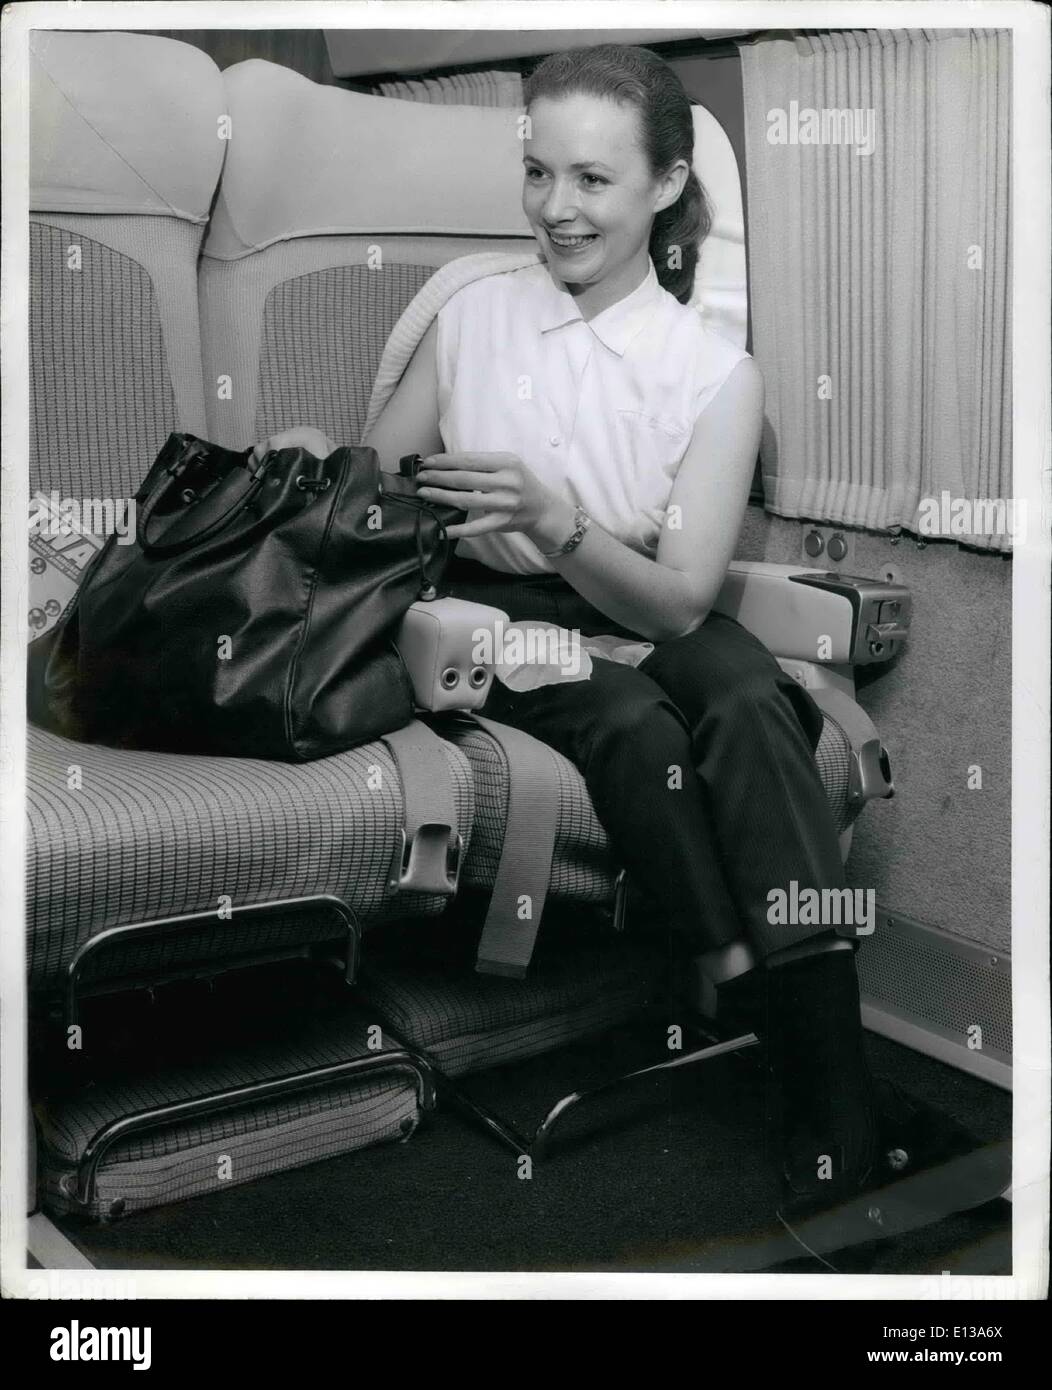 Febbraio 29, 2012 - Rosso - pelose attrice Piper Laurie scava profonda per qualcosa nella sua borsetta a bordo della TWA Jetstream prima di una Los Angeles volo. Piper sta tornando a Hollywood per iniziare a lavorare su una nuova immagine. Foto Stock